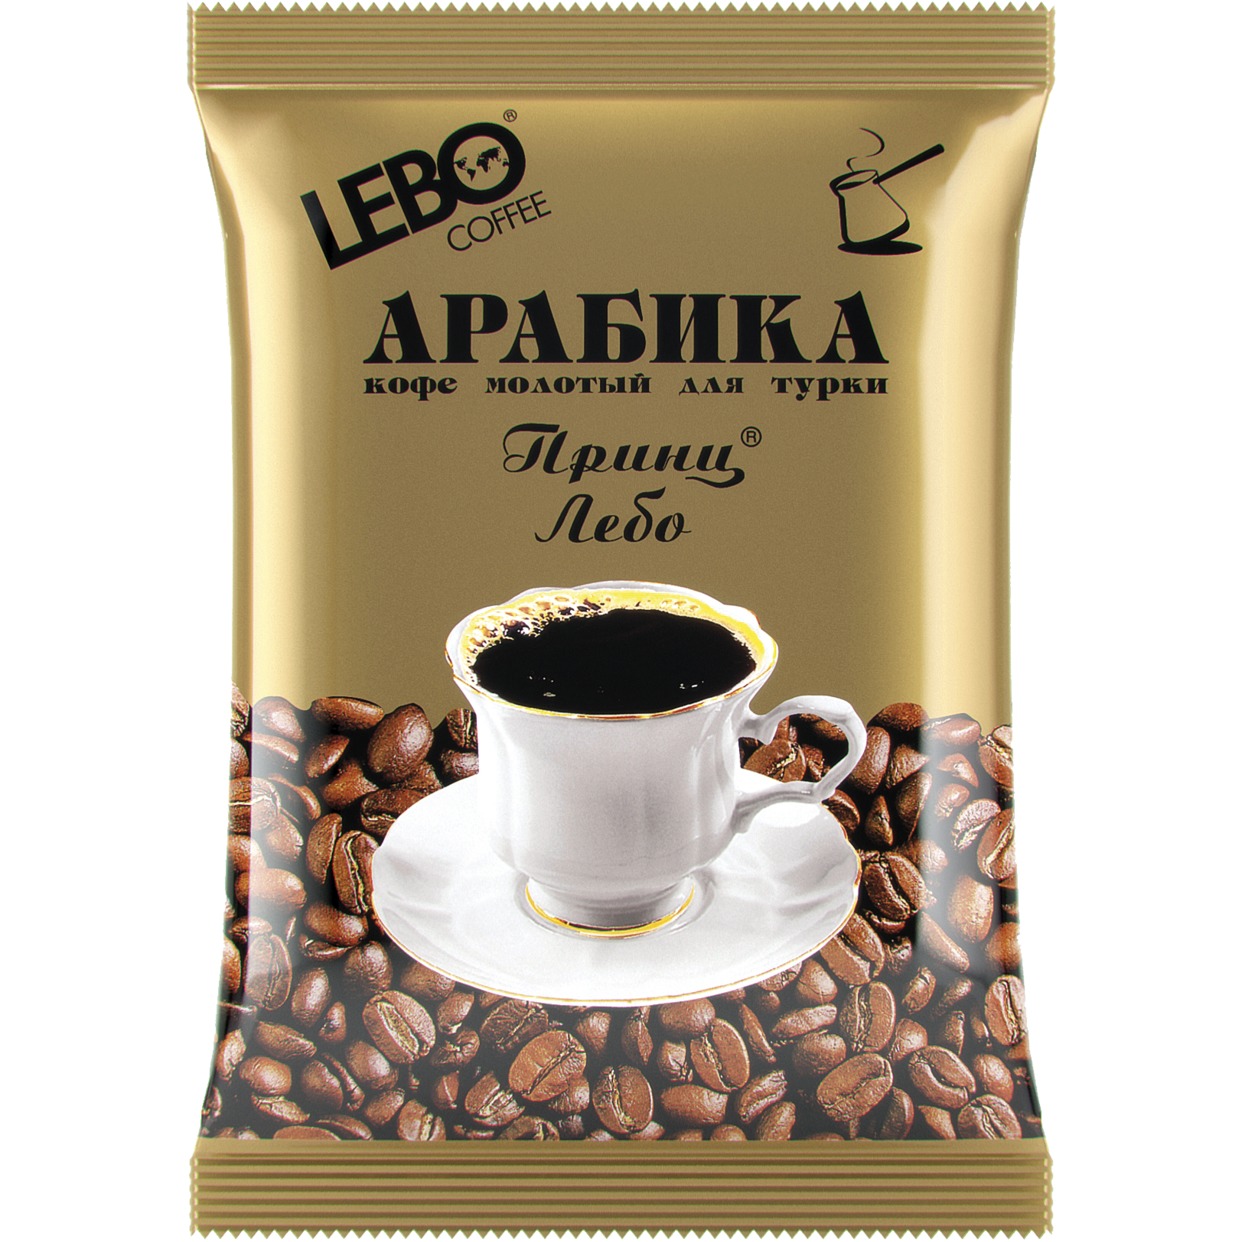 Кофе Lebo Принц Лебо арабика молотый для турки 100 г по акции в Пятерочке